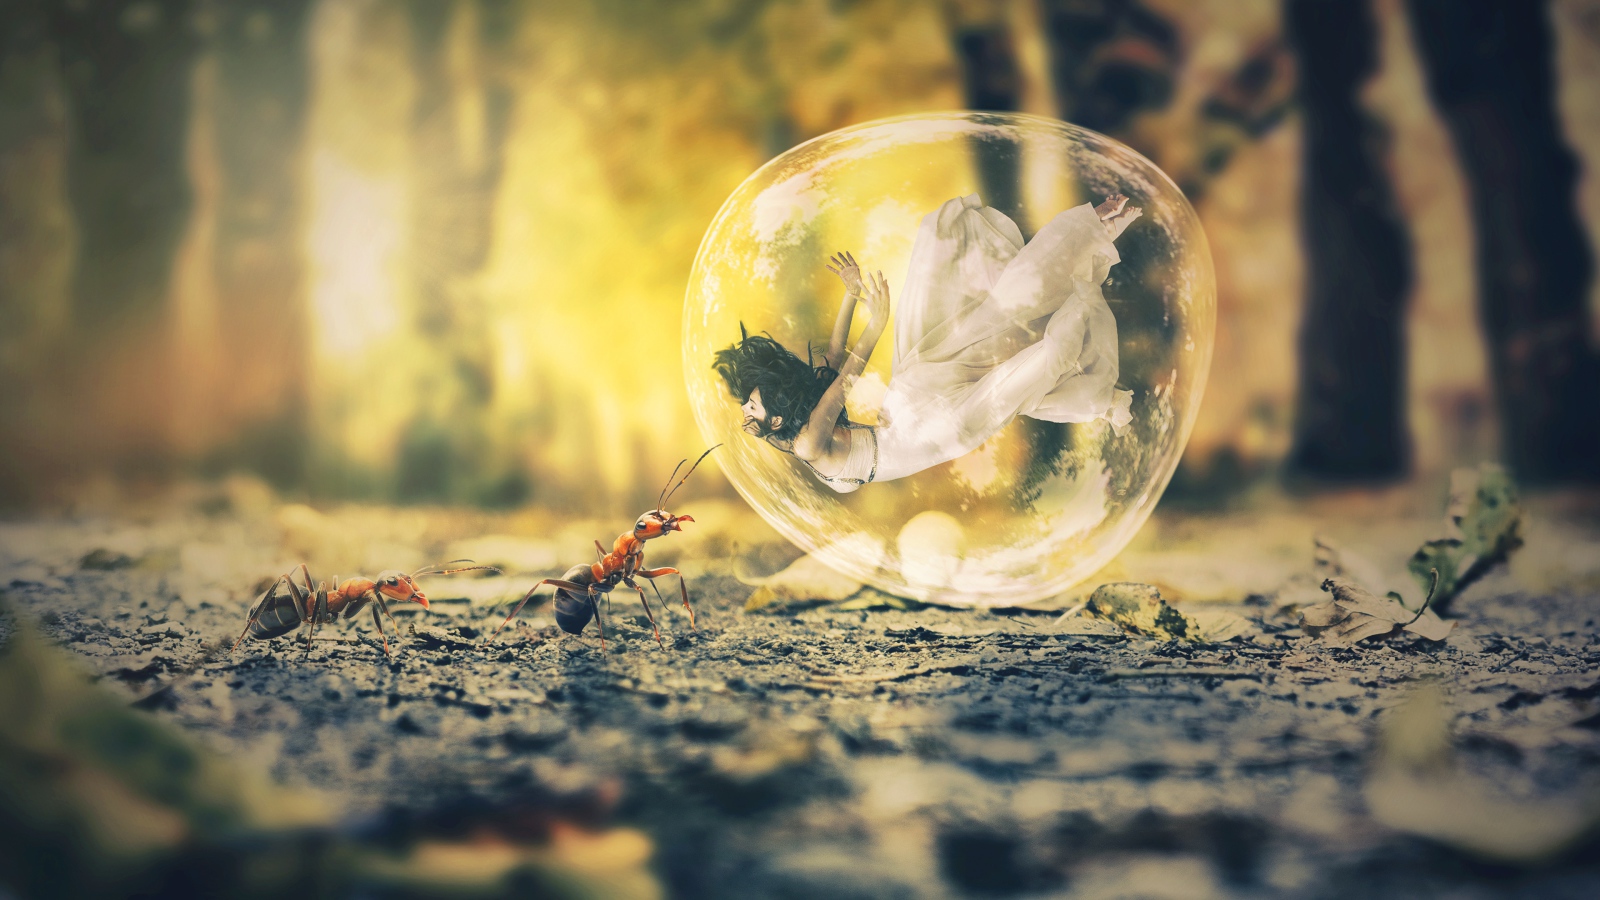 Девушка в пузыре на асфальте с муравьями